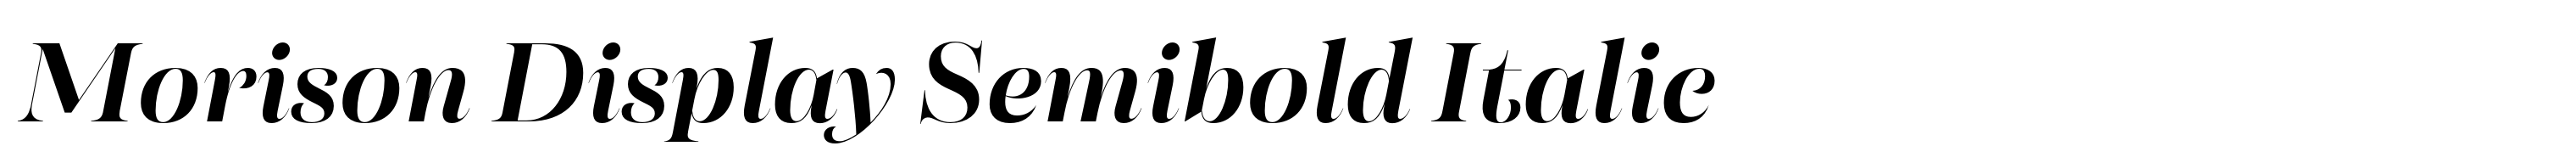 Morison Display Semibold Italic